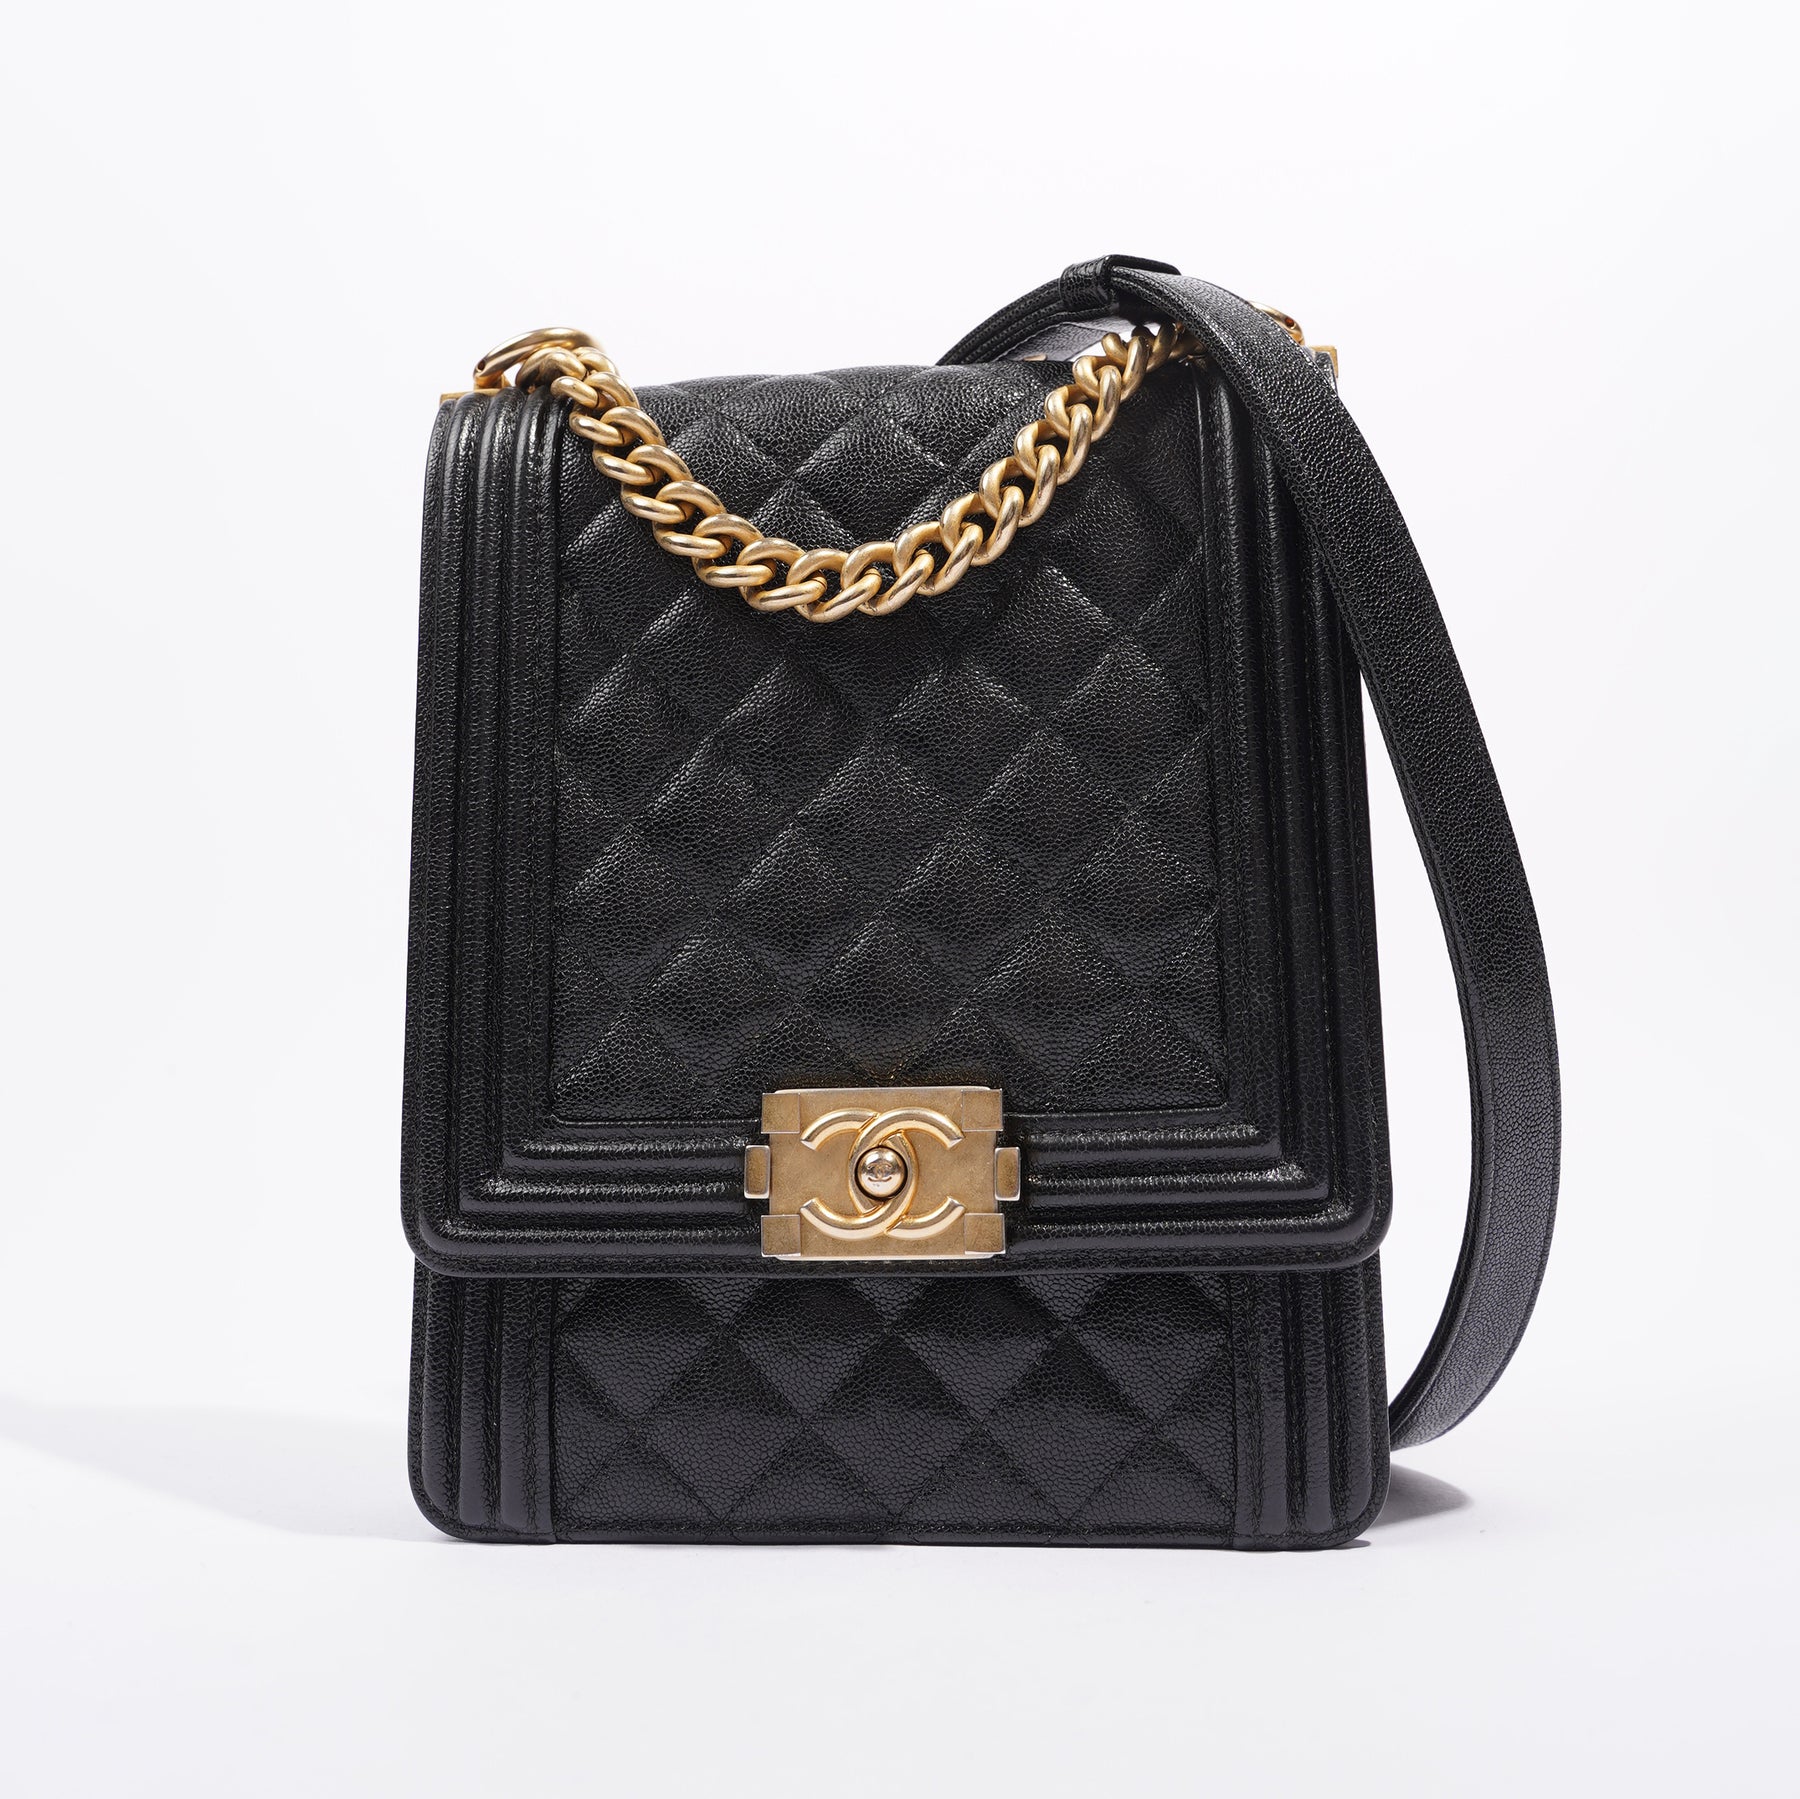 Chanel Black North/South Boy Bag